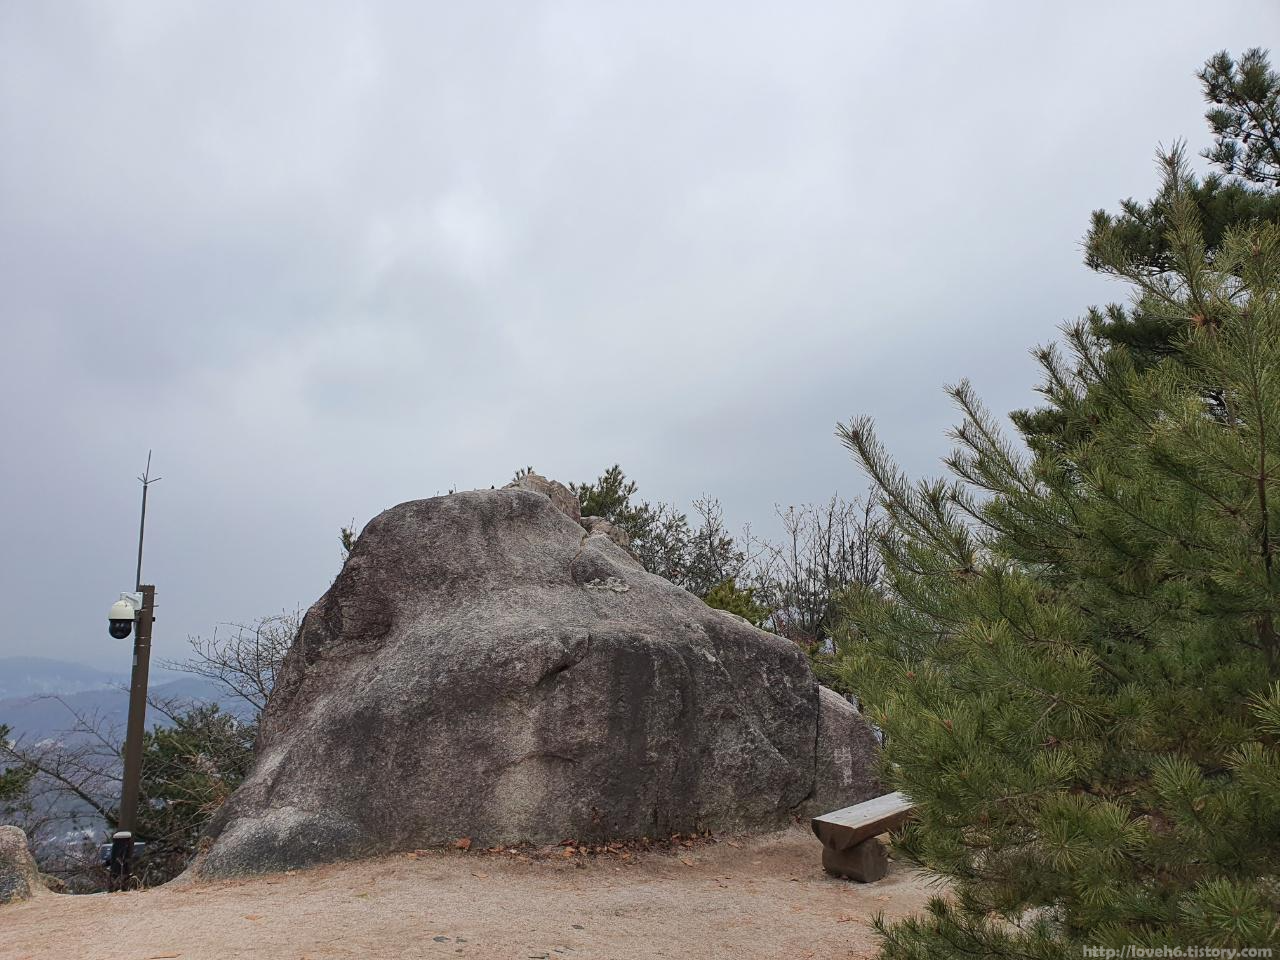 북악산_北岳山_Bukaksan/열심히 걸어서 정상까지 

작 도착하였습니다 

이곳 바위가 있는곳으로 오시면 탁 트인

풍경을 보실 수 있습니다